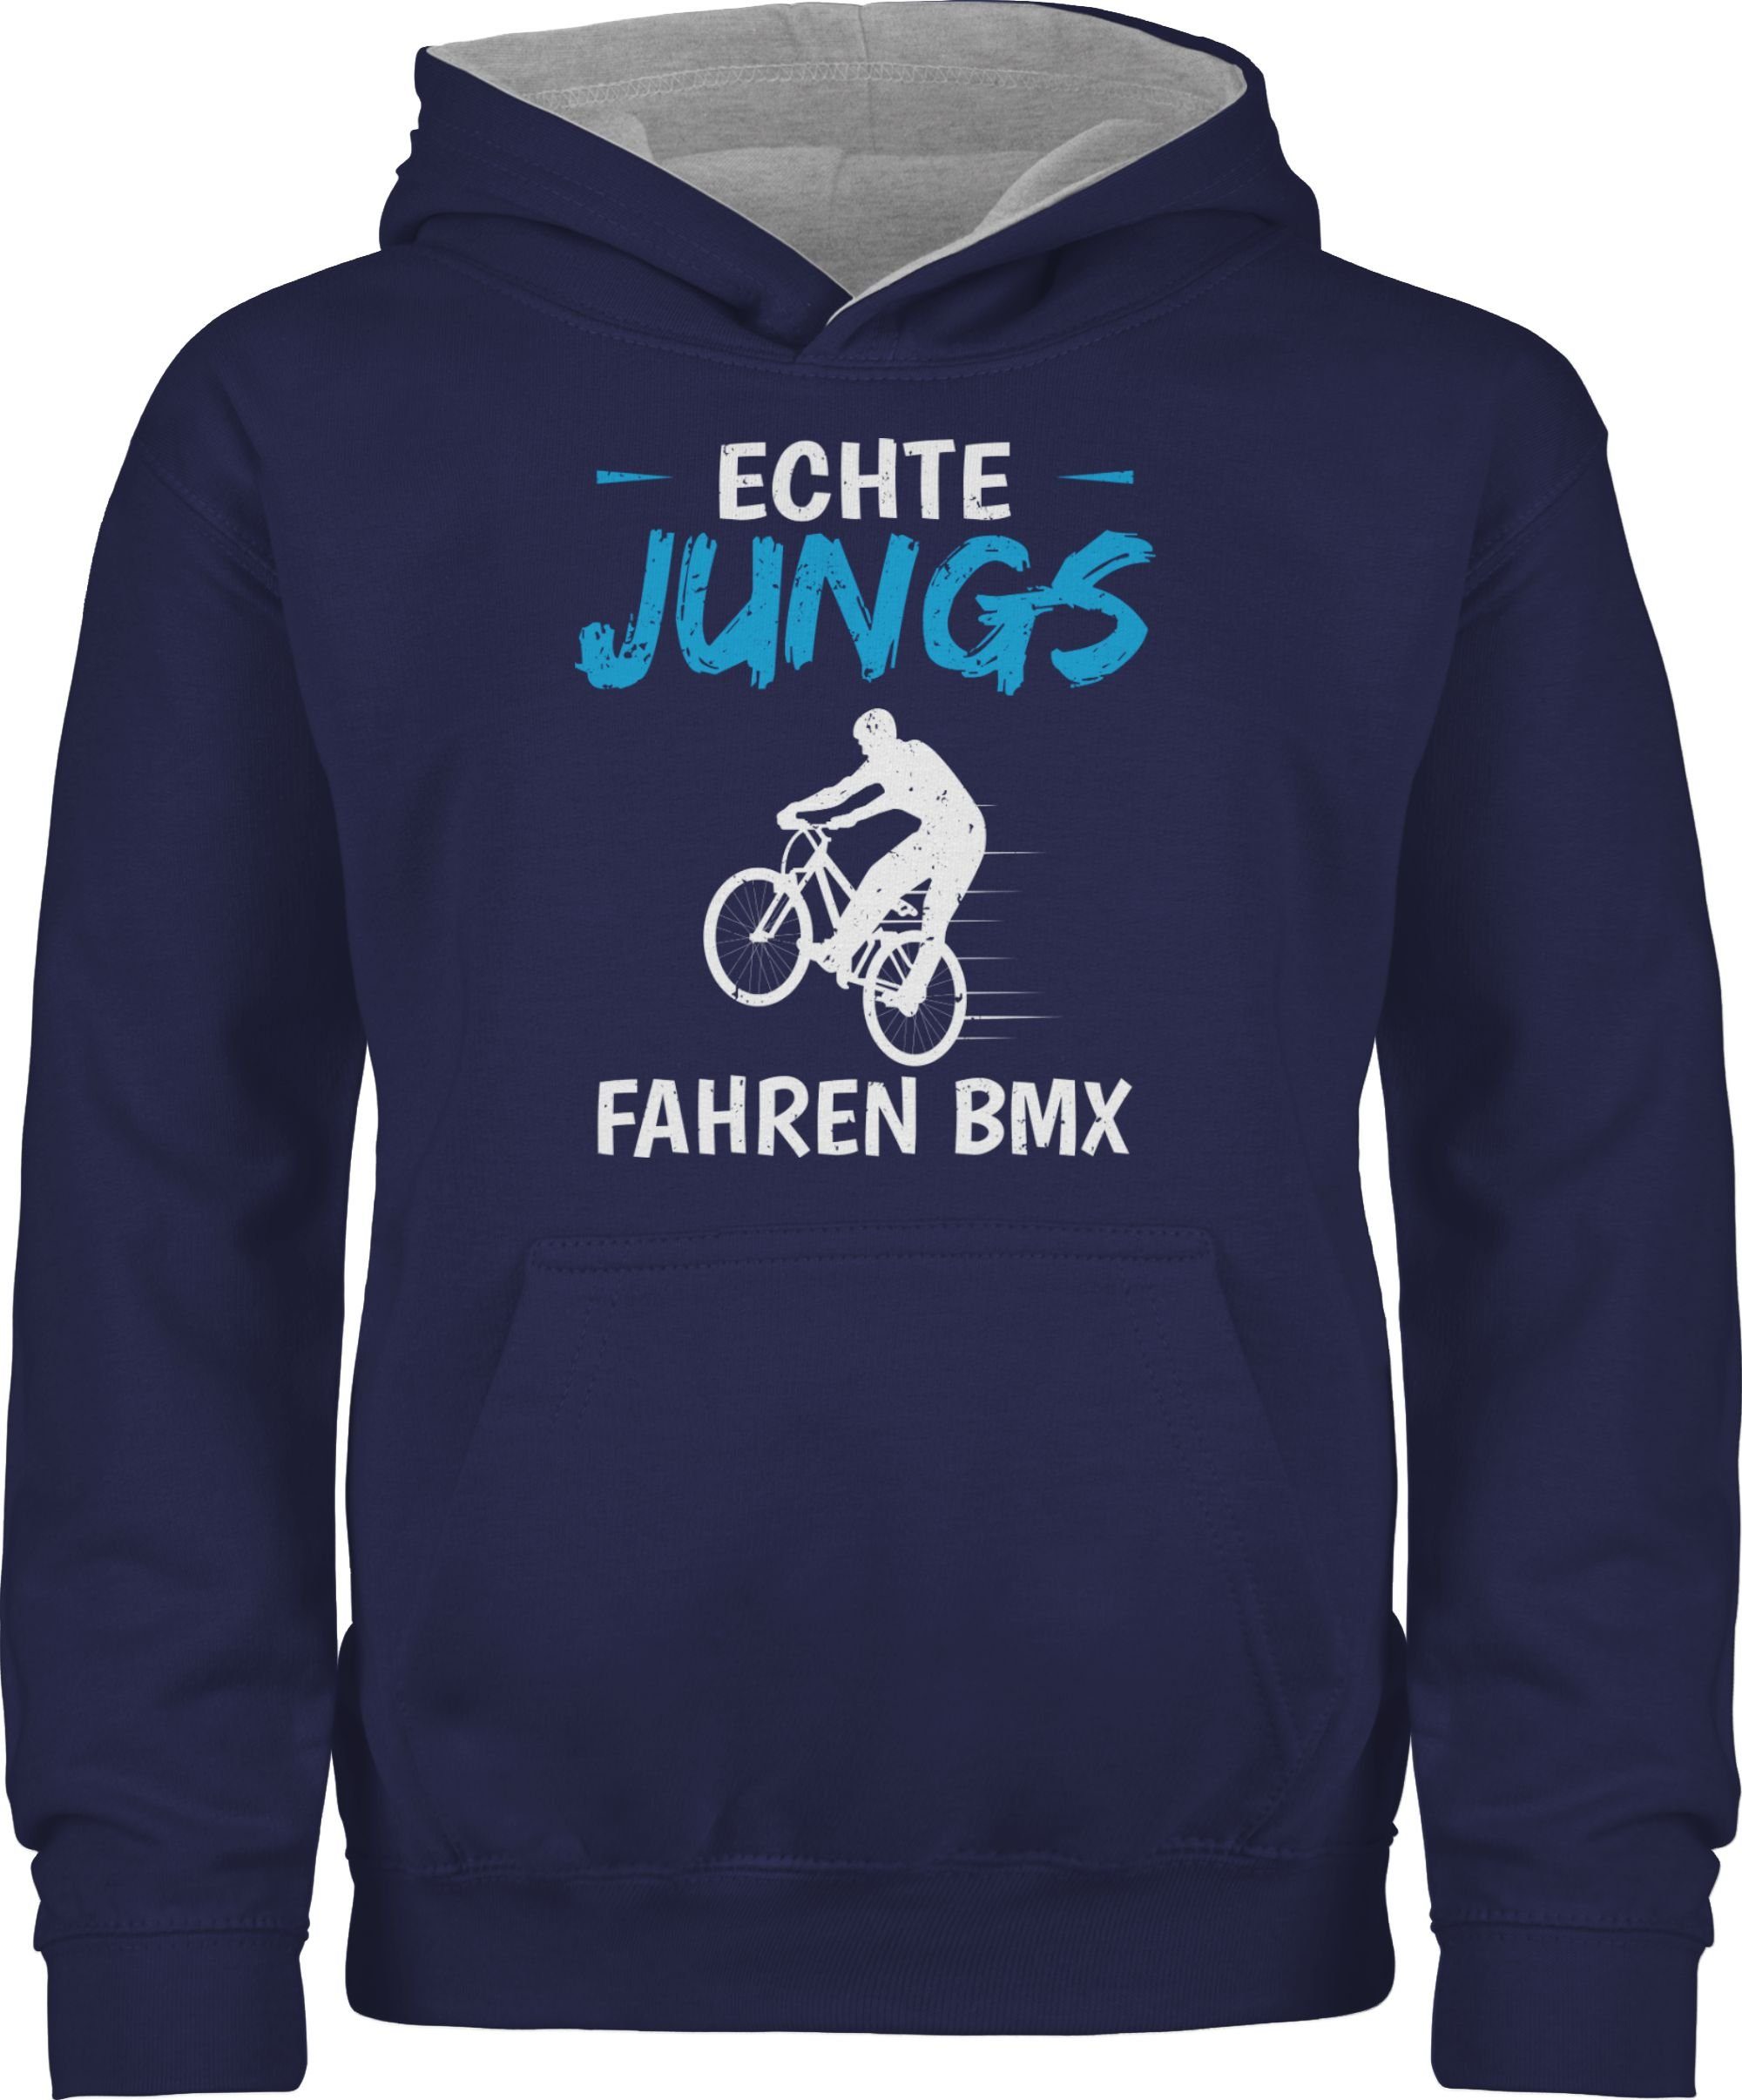 Shirtracer Hoodie Echte Jungs fahren BMX Kinder Sport Kleidung 2 Navy Blau/Grau meliert